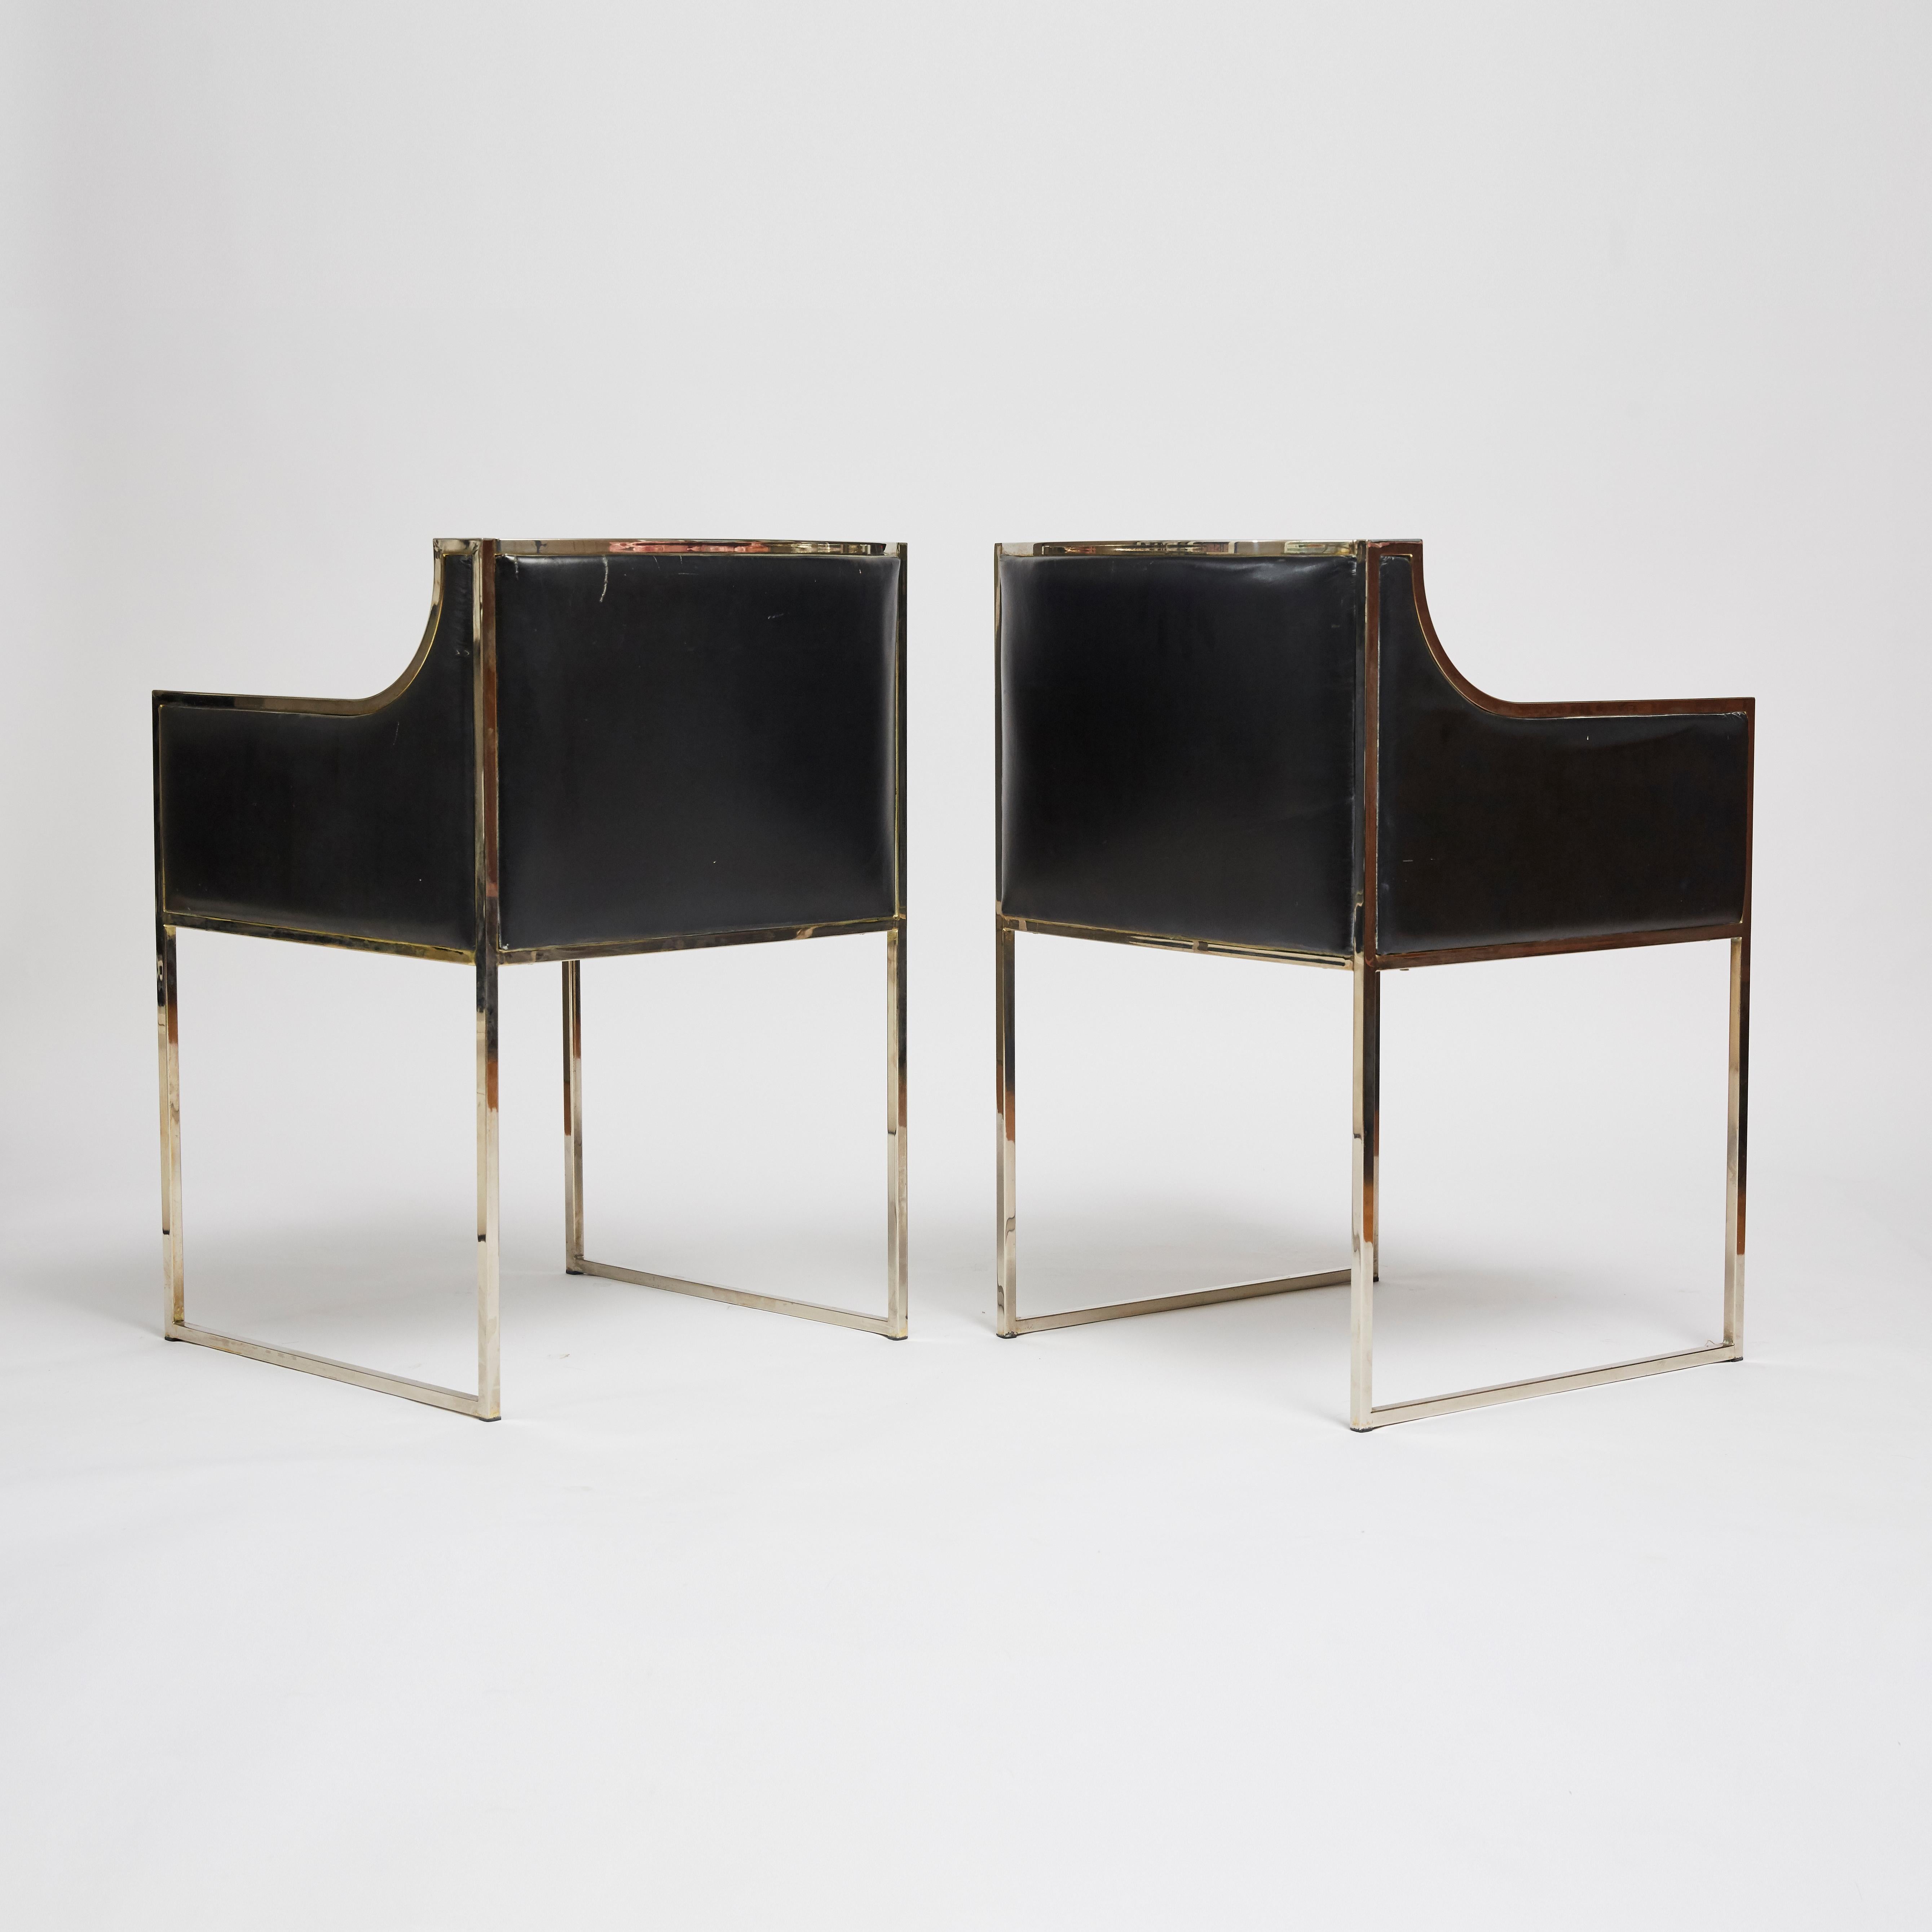 Ein Paar italienische Sessel aus den 1970er Jahren mit verchromtem Gestell und originaler schwarzer Lederpolsterung, die Willy Rizzo zugeschrieben werden. Der Chromrahmen weist einige Spuren auf und die Lederpolsterung weist alters- und